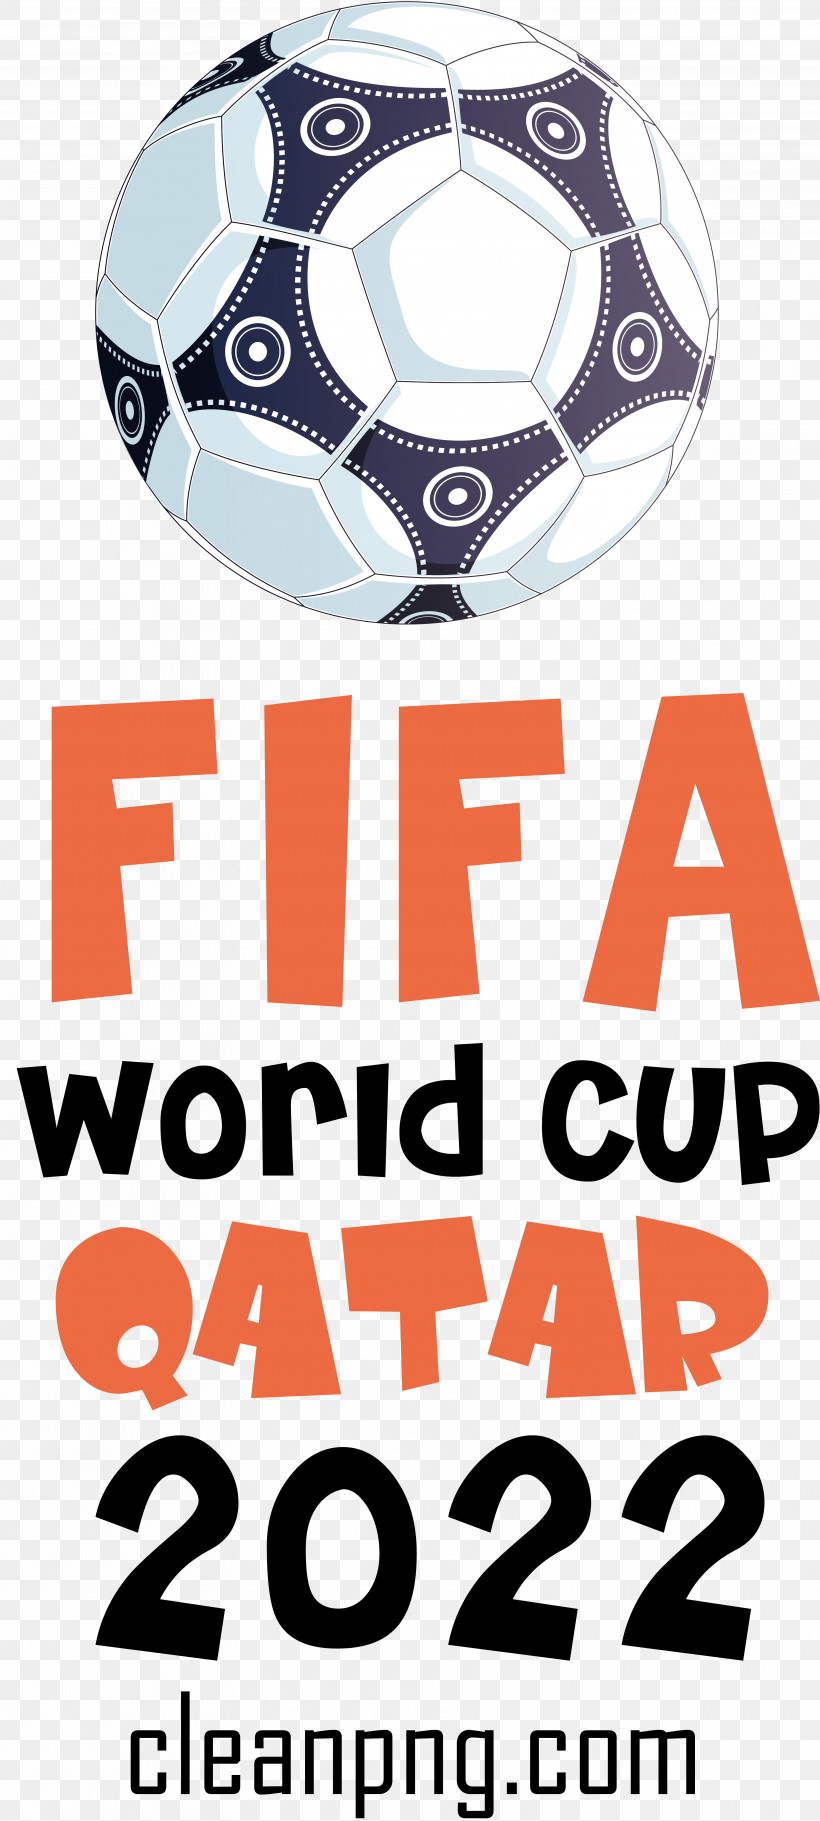 Fifa World Cup Qatar 2022 Fifa World Cup Qatar Football Soccer, PNG, 3562x7914px, Fifa World Cup Qatar 2022, Fifa World Cup, Football, Qatar, Soccer Download Free